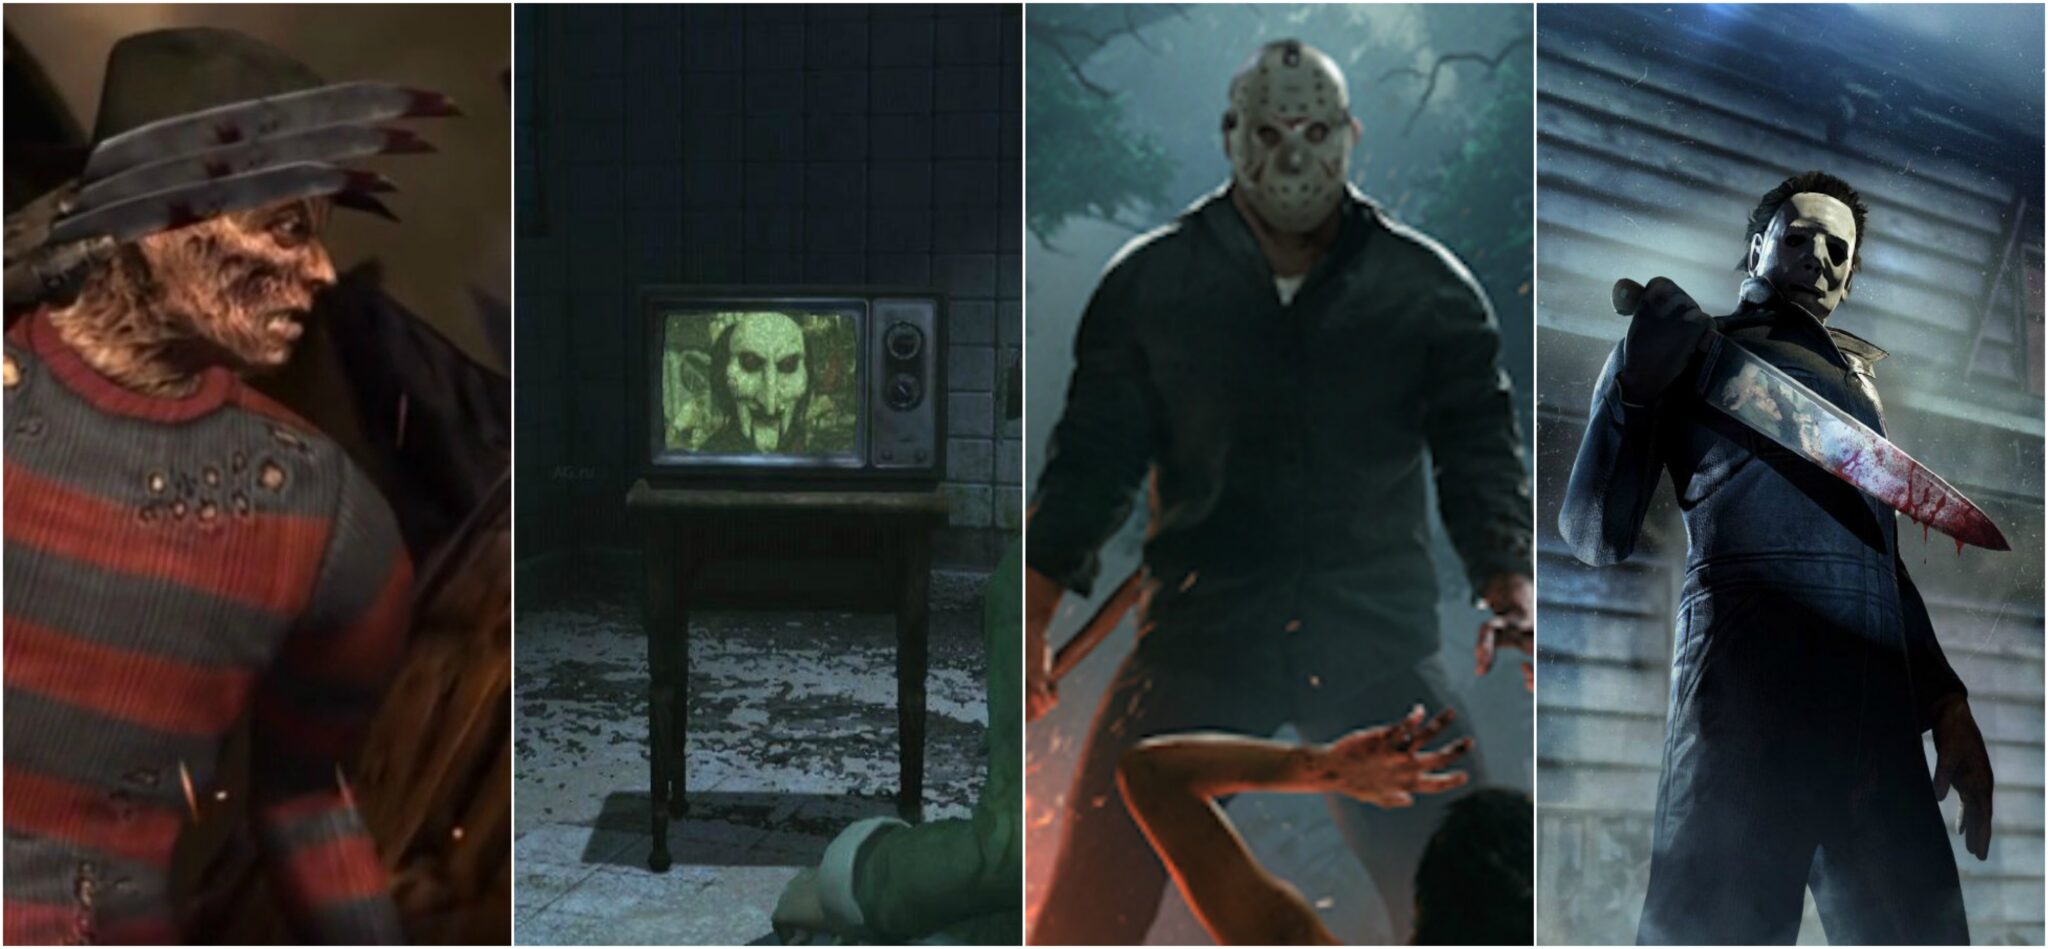 Jeux vidéos inspirés de films d'horreur